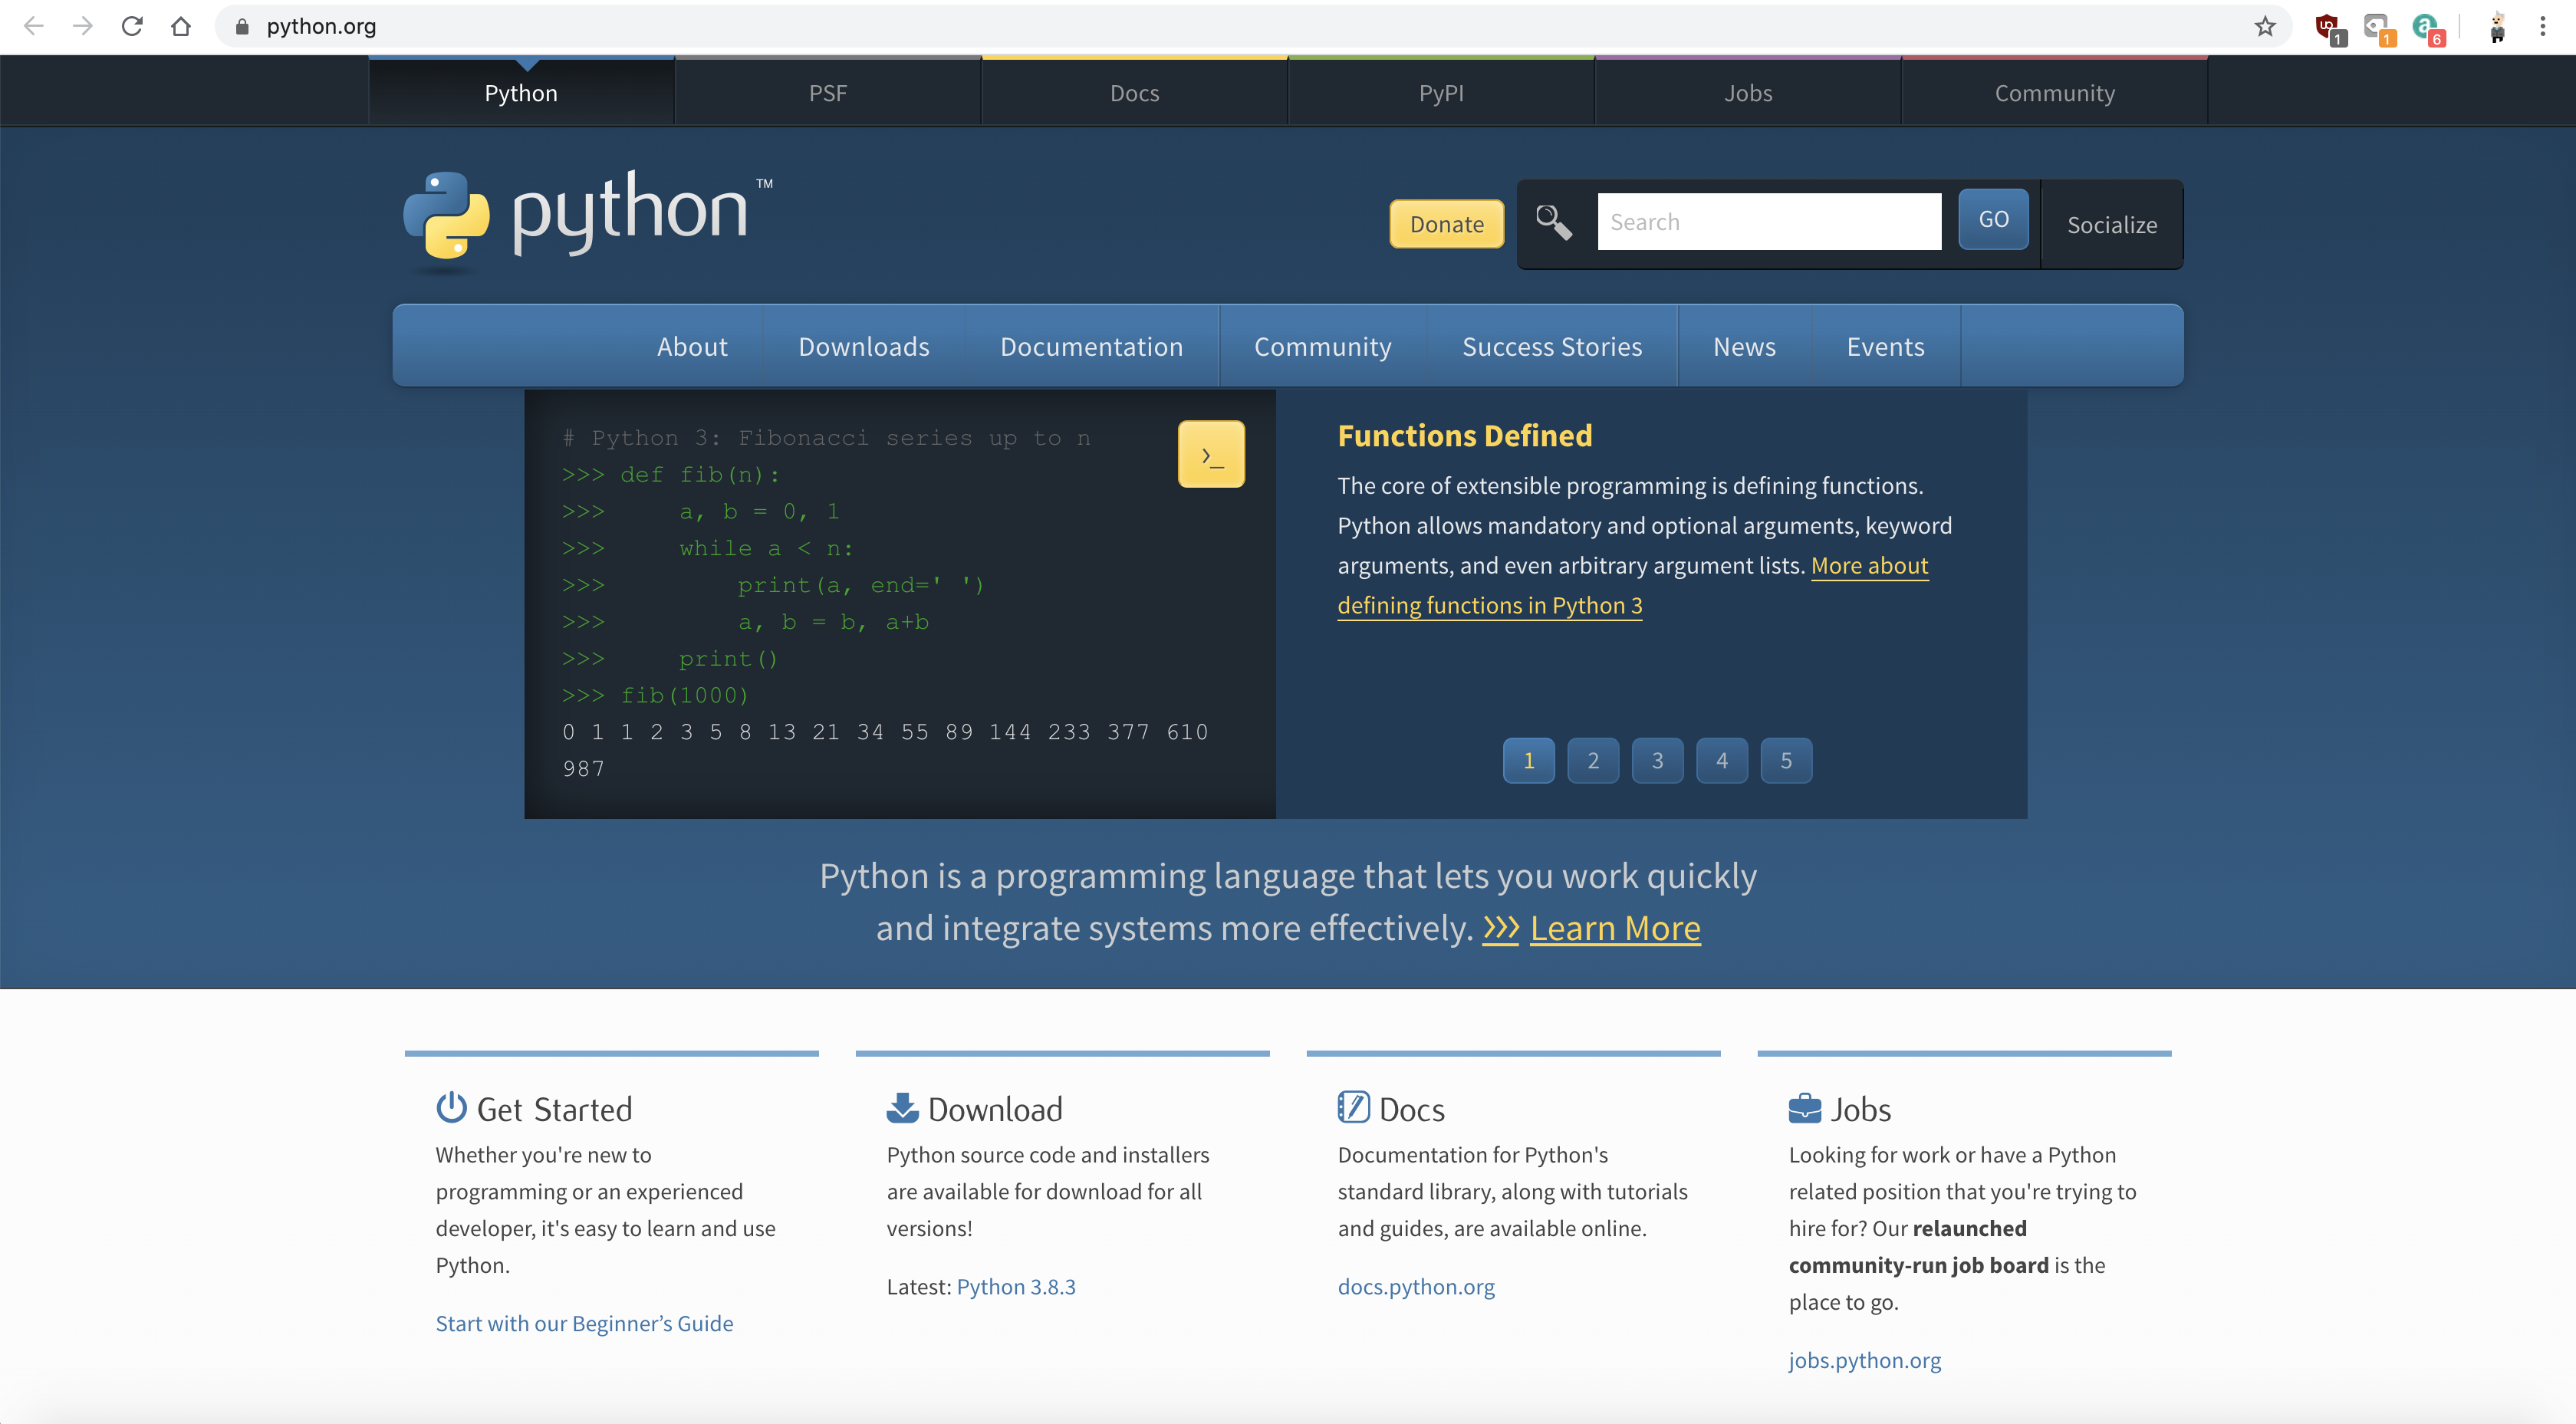 Python homepage image